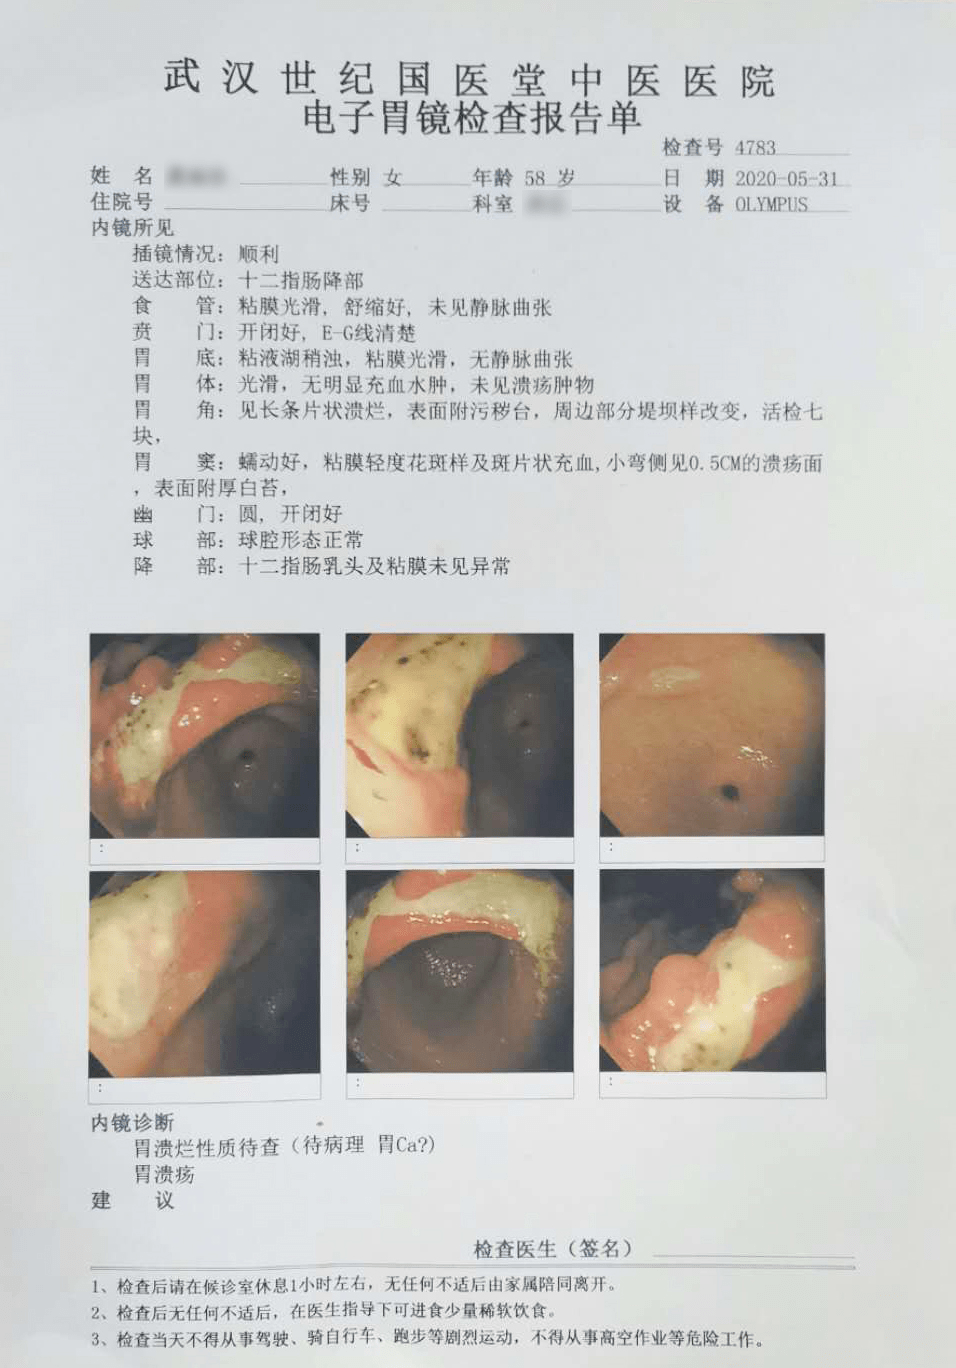 胃癌图片和胃糜烂图片图片